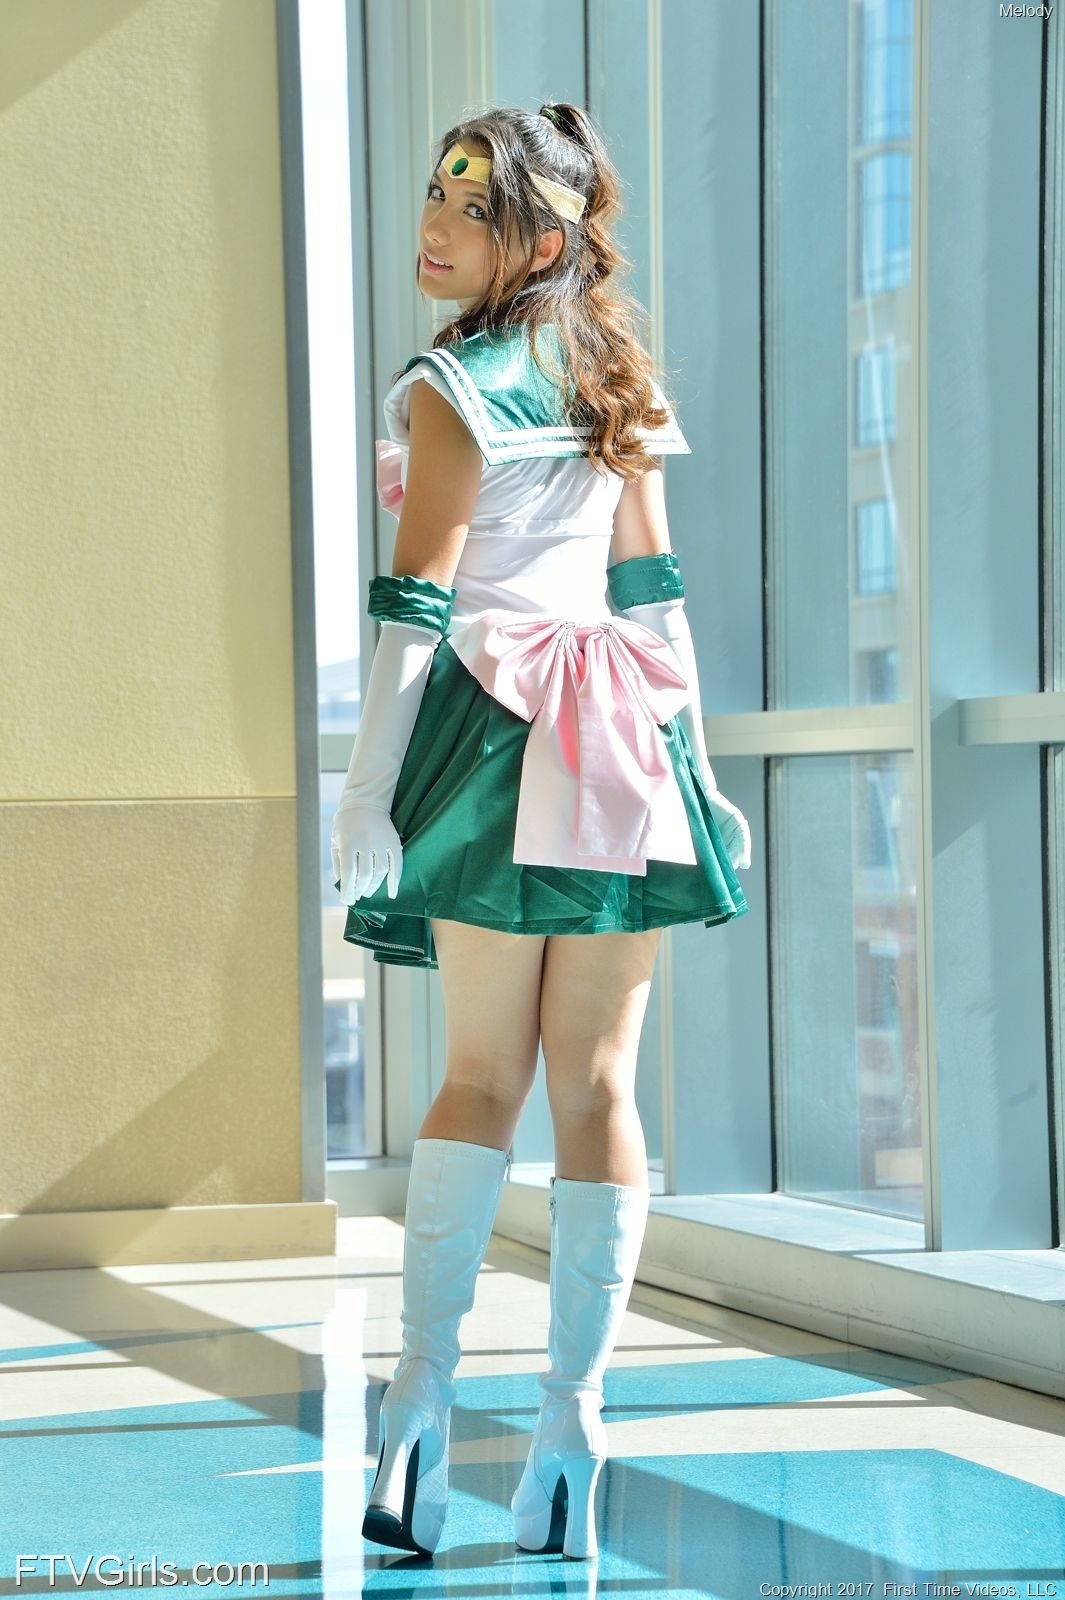 Melody Wylde as Sailor Jupiter 108